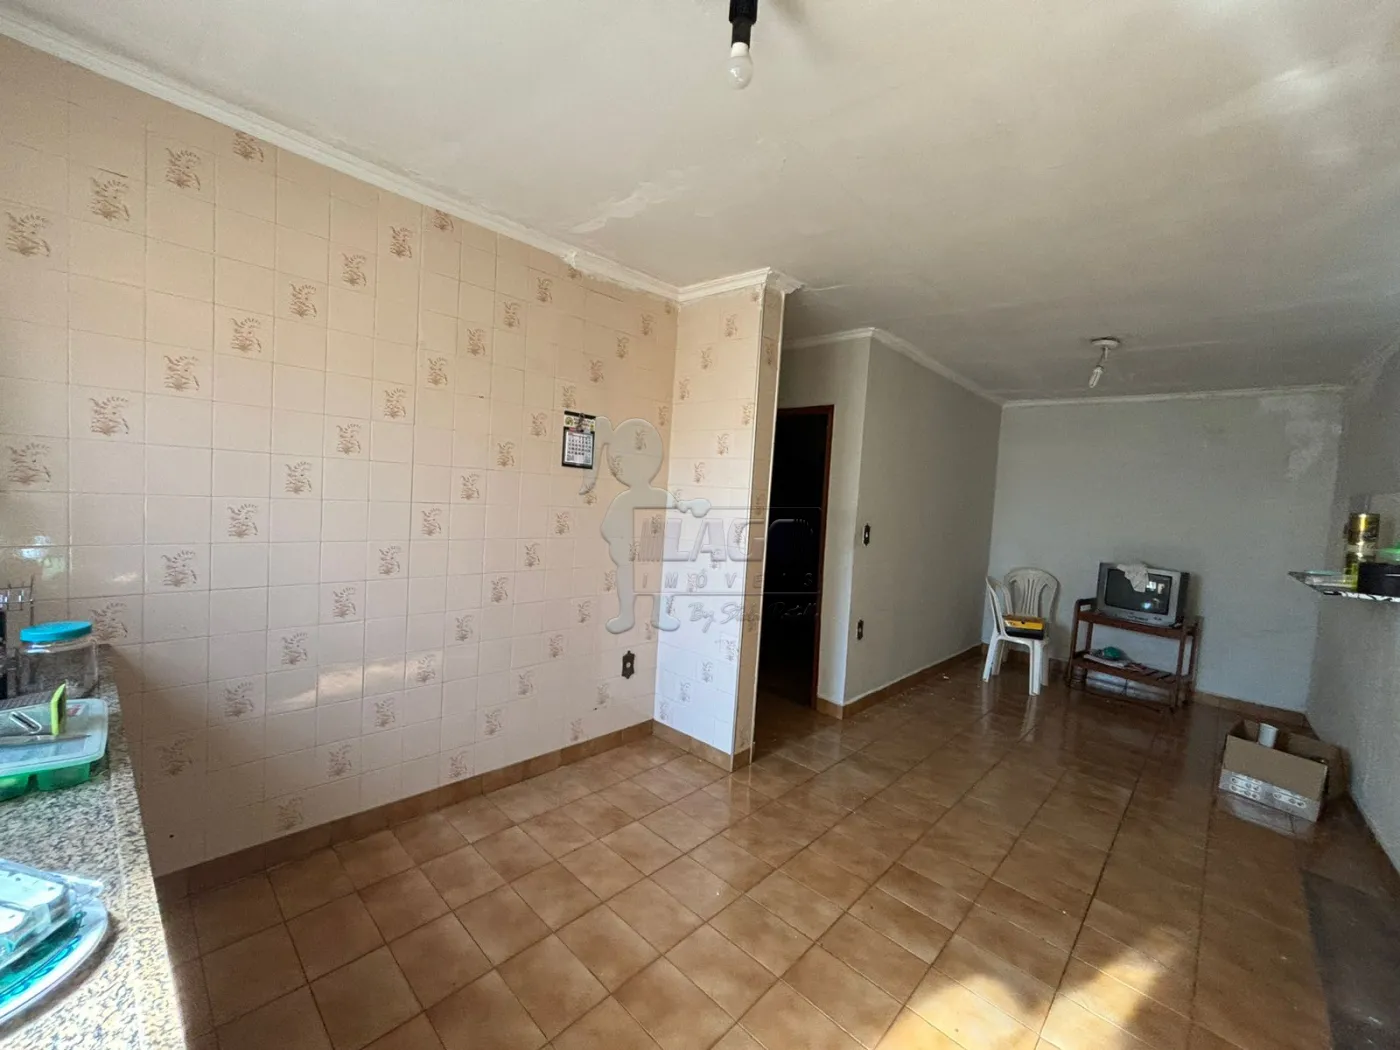 Comprar Casa / Padrão em Ribeirão Preto R$ 520.000,00 - Foto 18